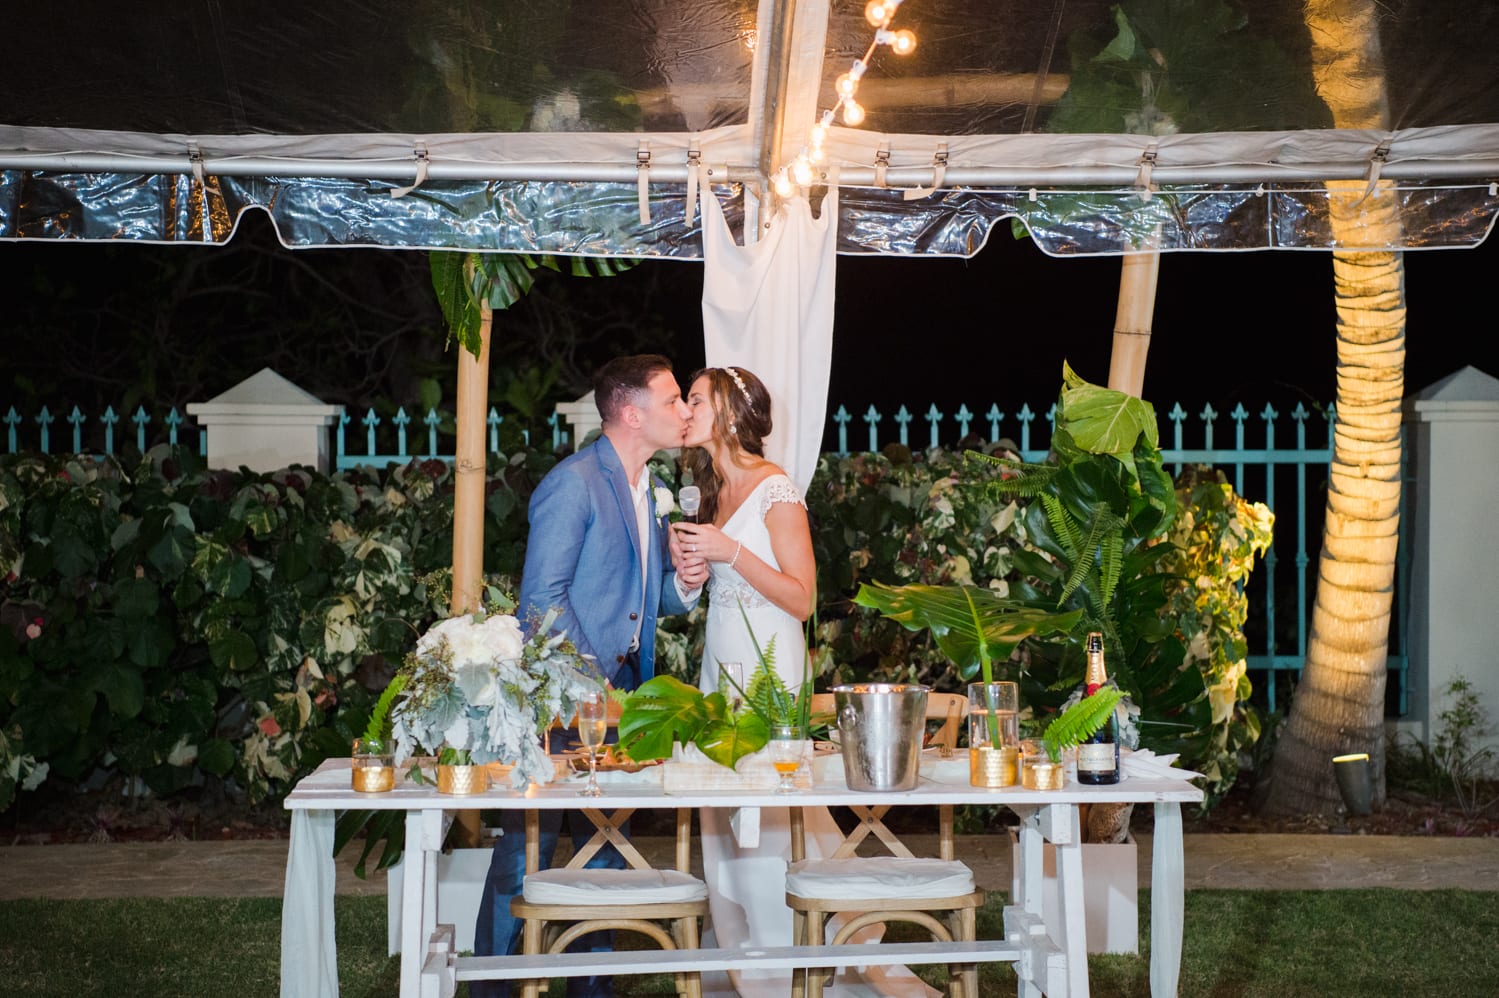 Puerto Rico wedding photographer Camille Fontanez shares a destination beach wedding at Villa De Zecheo in Rincon